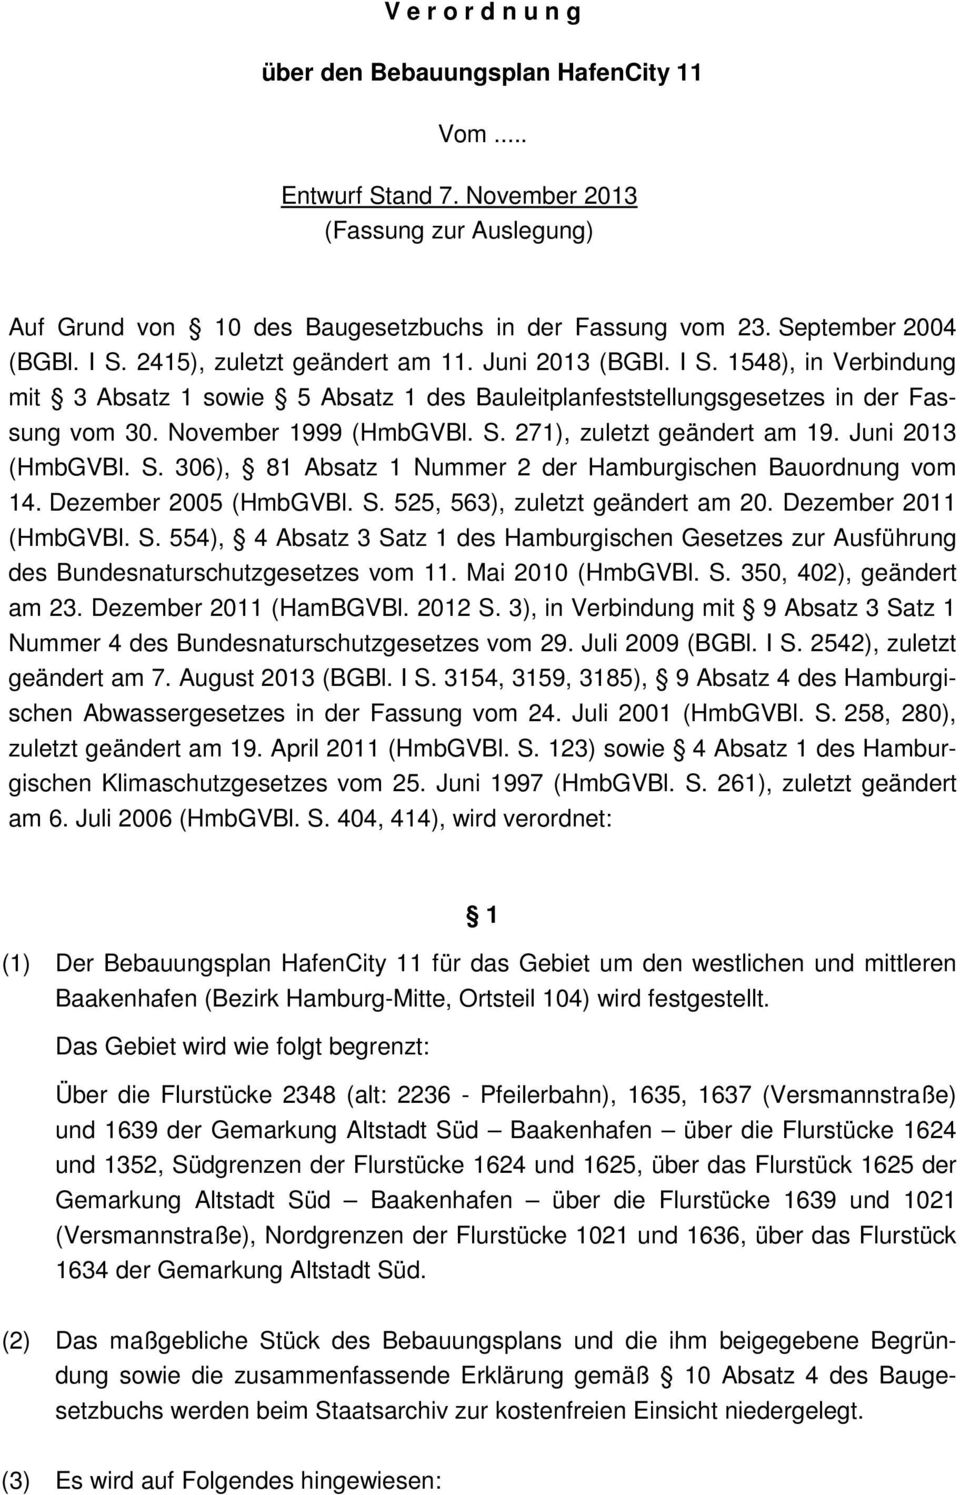 Juni 2013 (HmbGVBl. S. 306), 81 Absatz 1 Nummer 2 der Hamburgischen Bauordnung vom 14. Dezember 2005 (HmbGVBl. S. 525, 563), zuletzt geändert am 20. Dezember 2011 (HmbGVBl. S. 554), 4 Absatz 3 Satz 1 des Hamburgischen Gesetzes zur Ausführung des Bundesnaturschutzgesetzes vom 11.